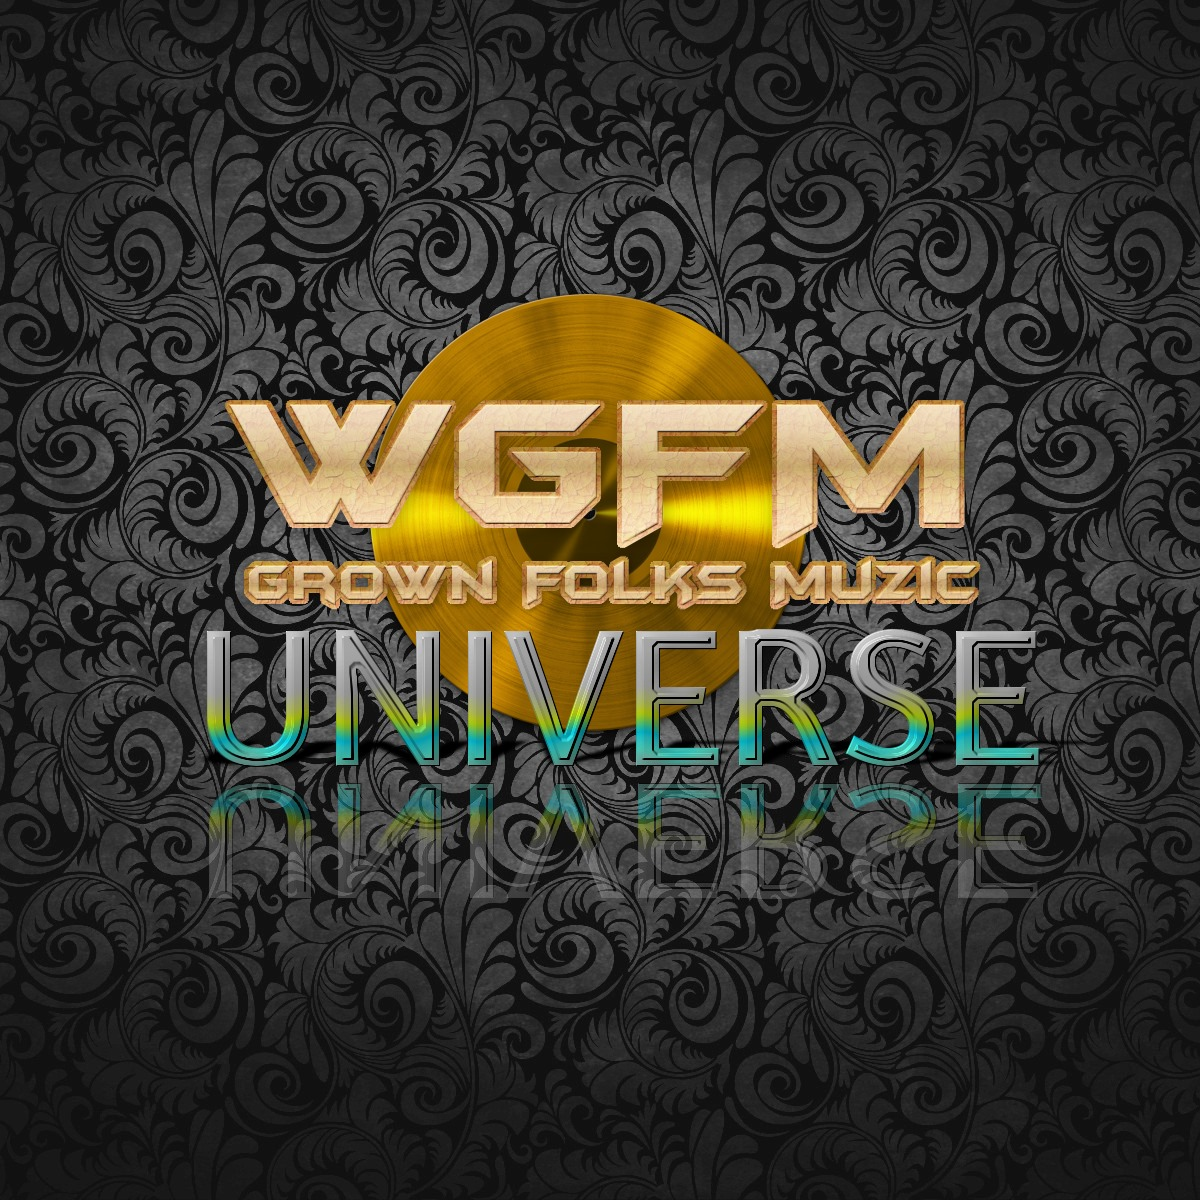 WGFM RADIO GROWN FOLKS MUSIC